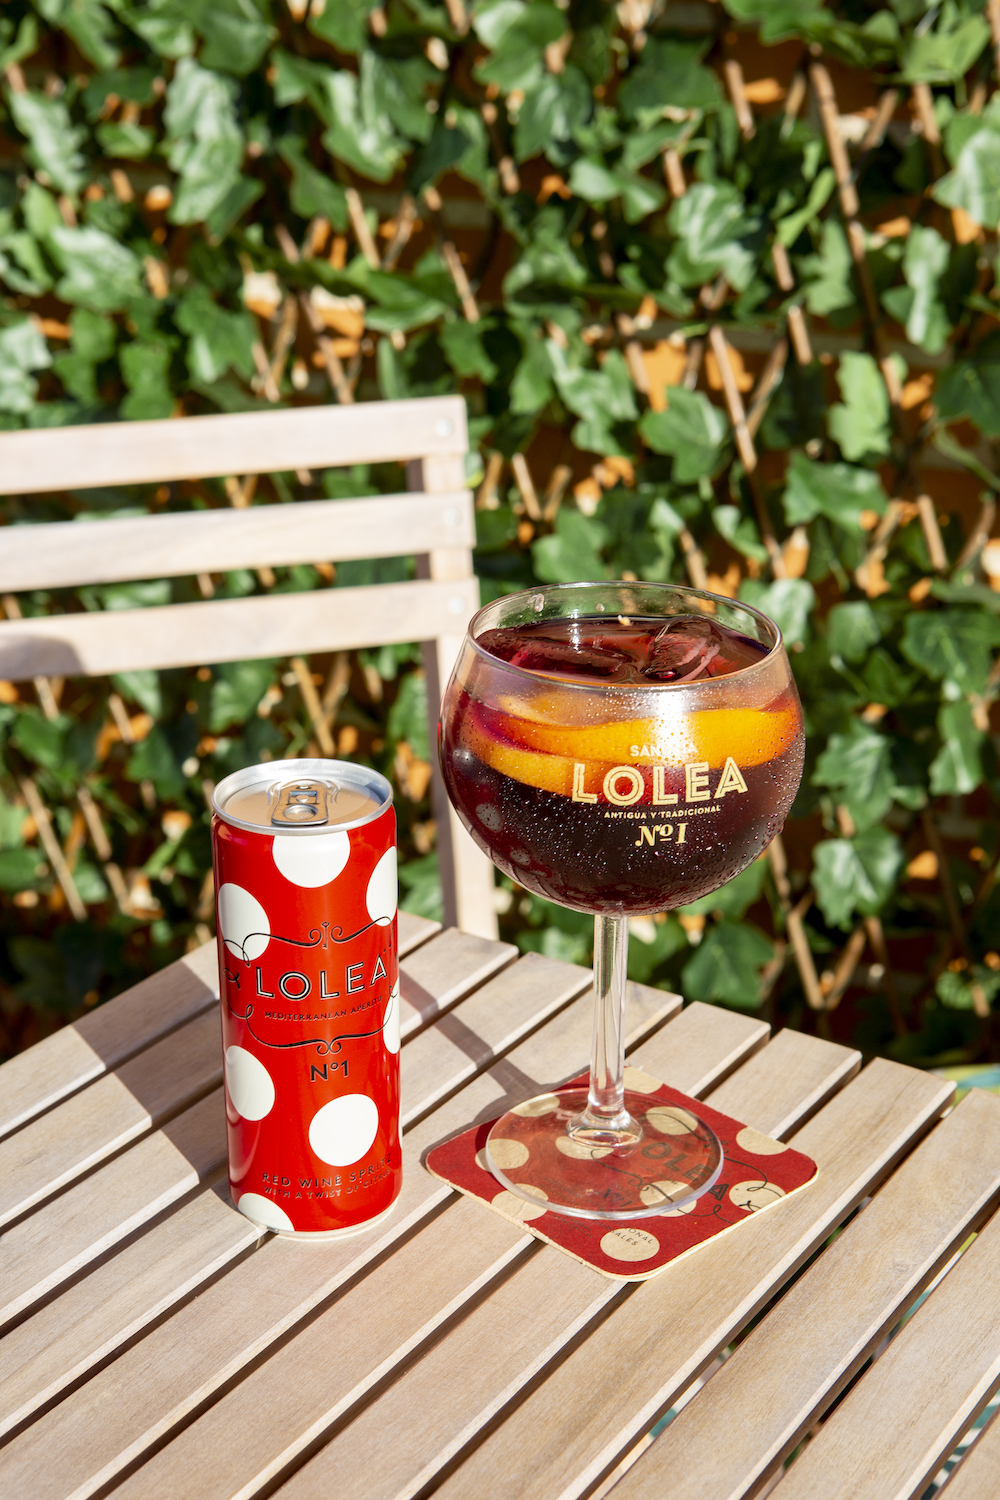 imagen 4 de Lolea Nº1, un nuevo wine spritz en lata.